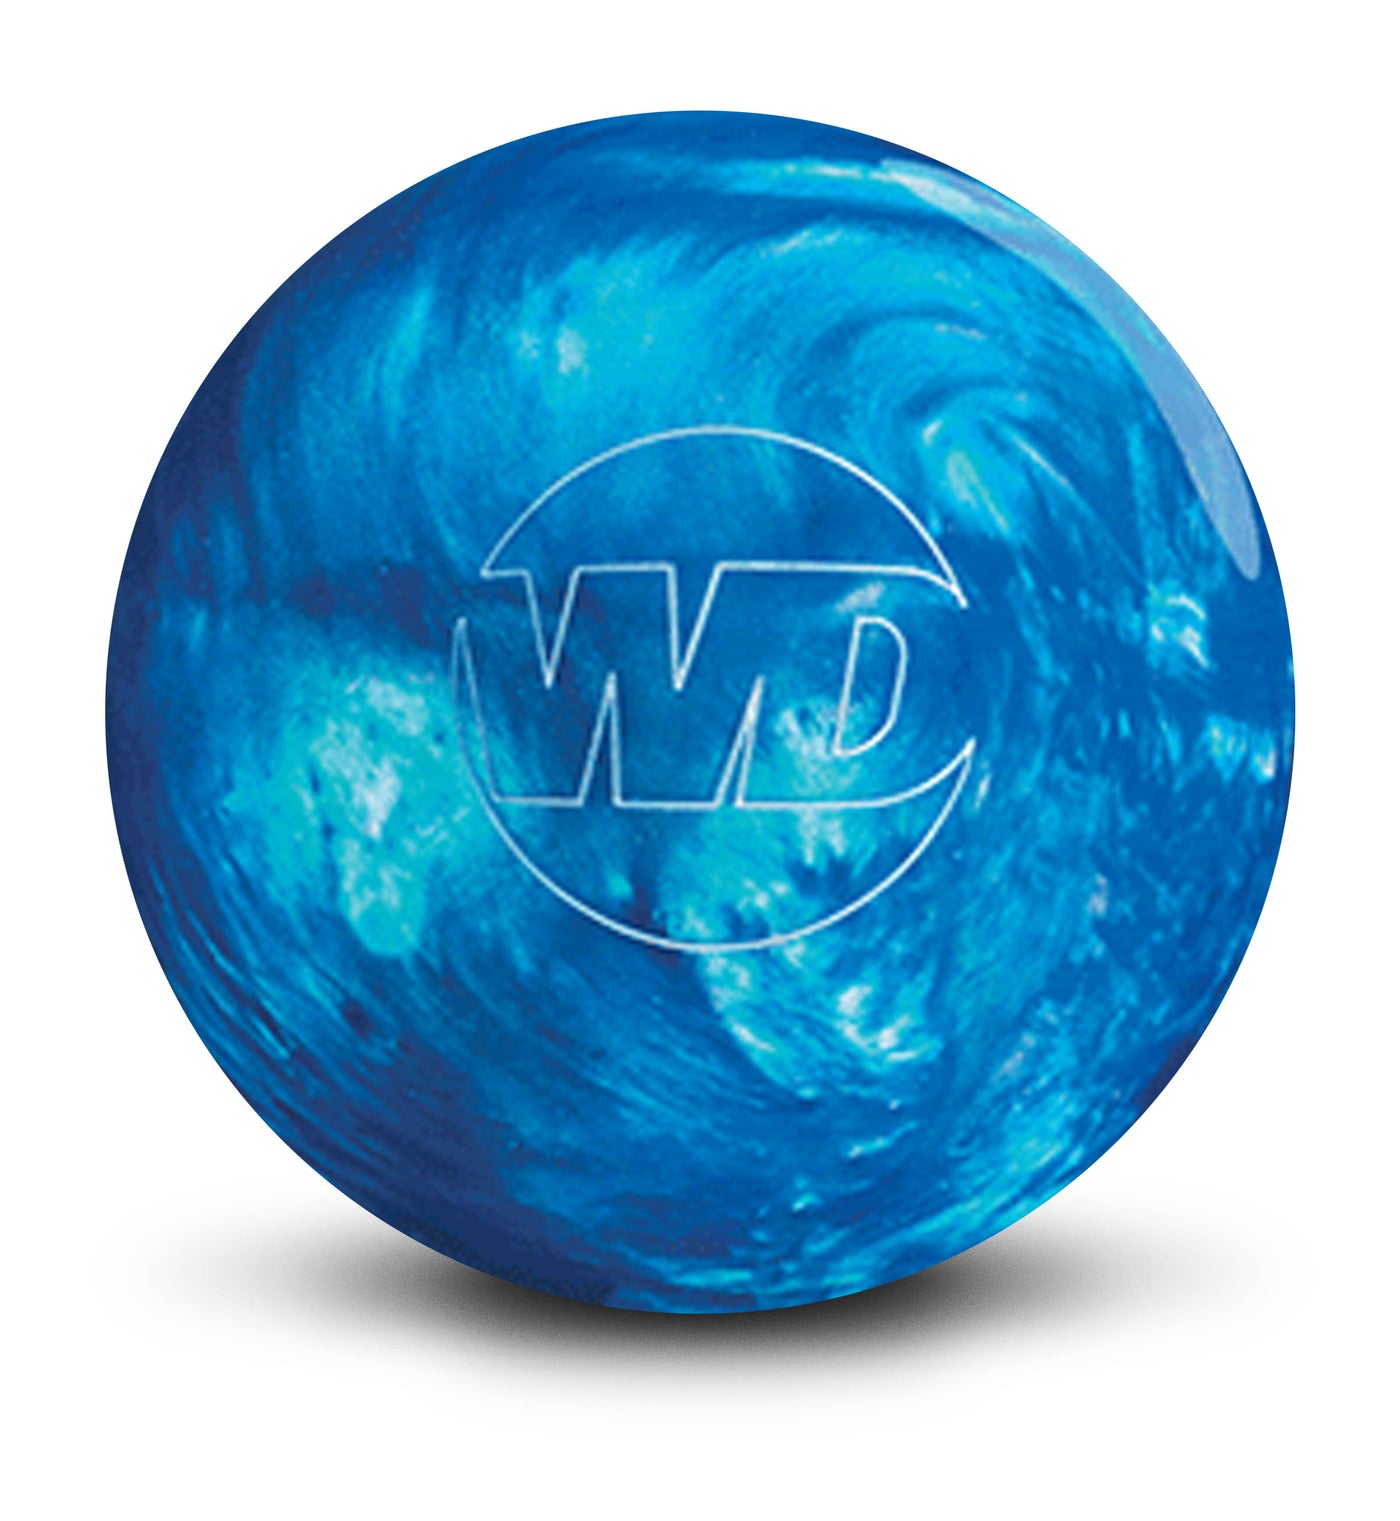 White Dot Blue Pearl bowling ball